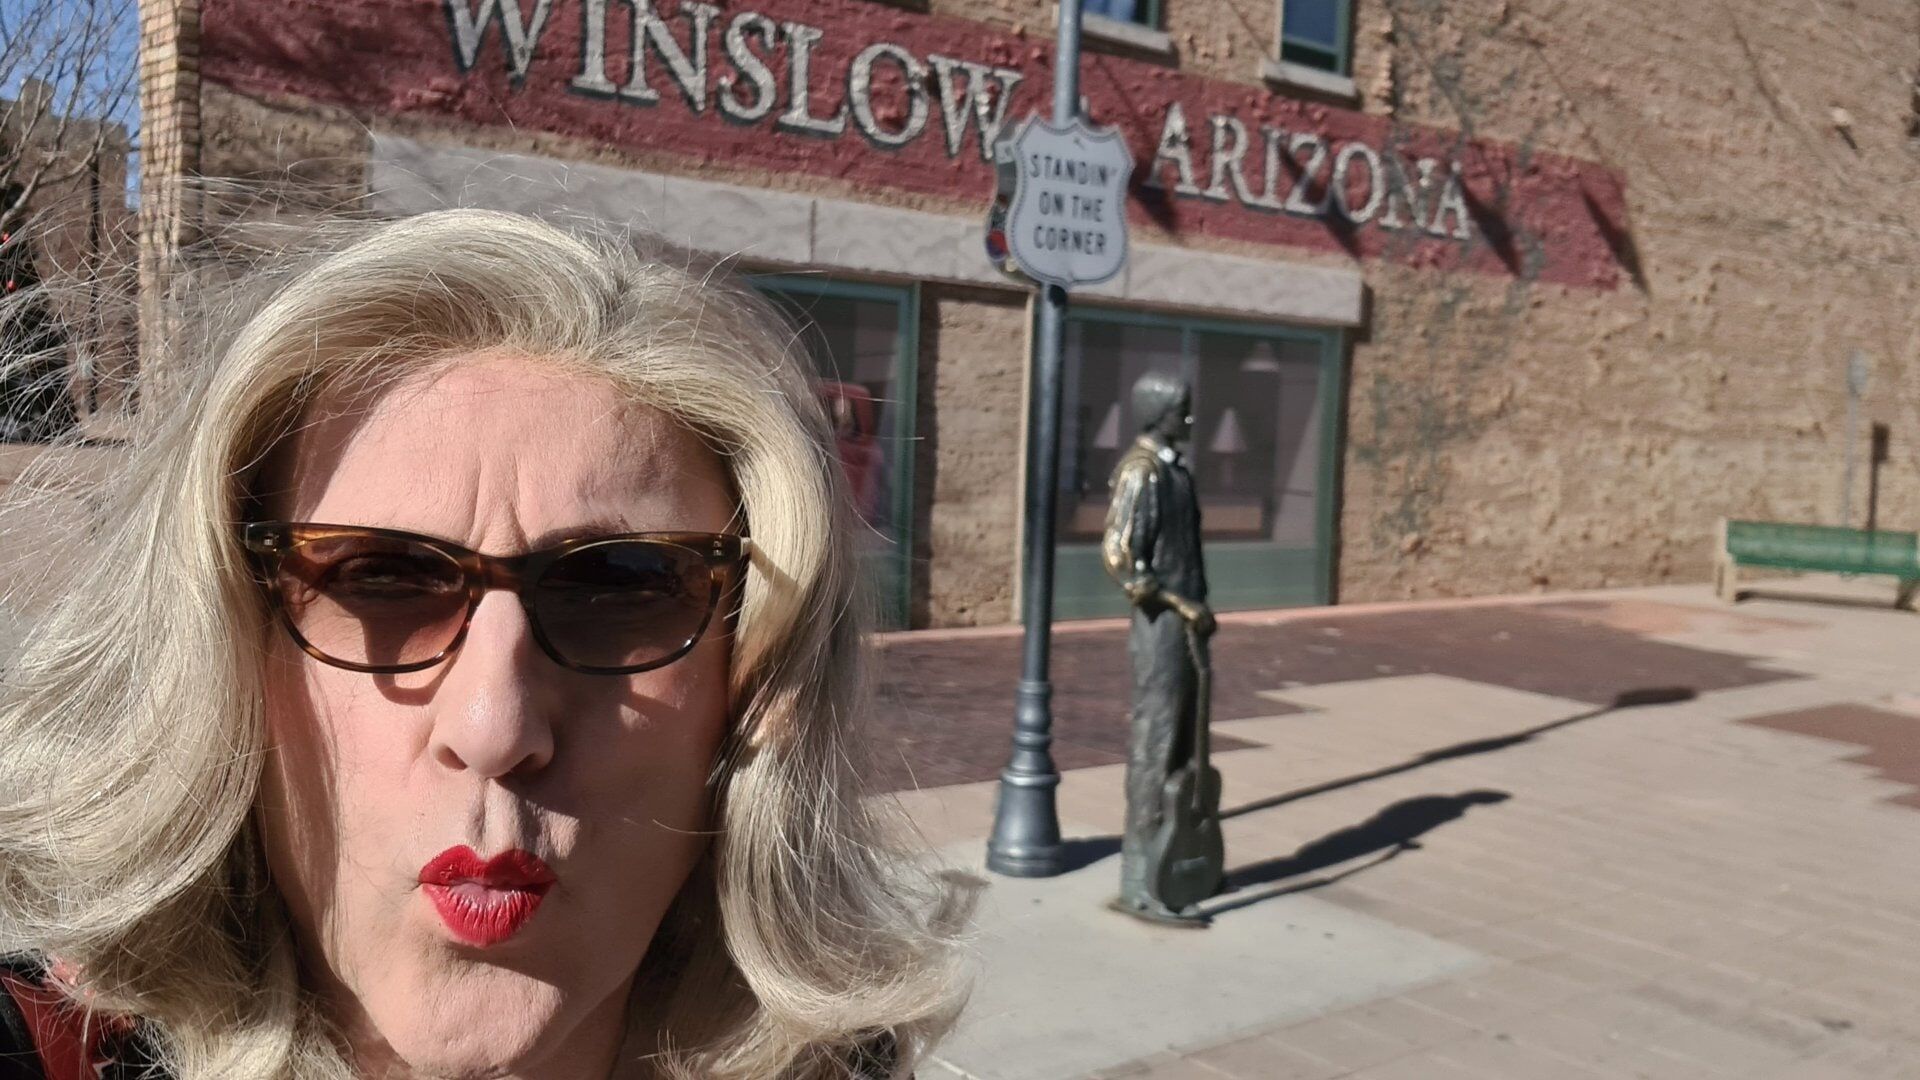 Desert Mustang Lady, Samantha visits Winslow Arizona #20